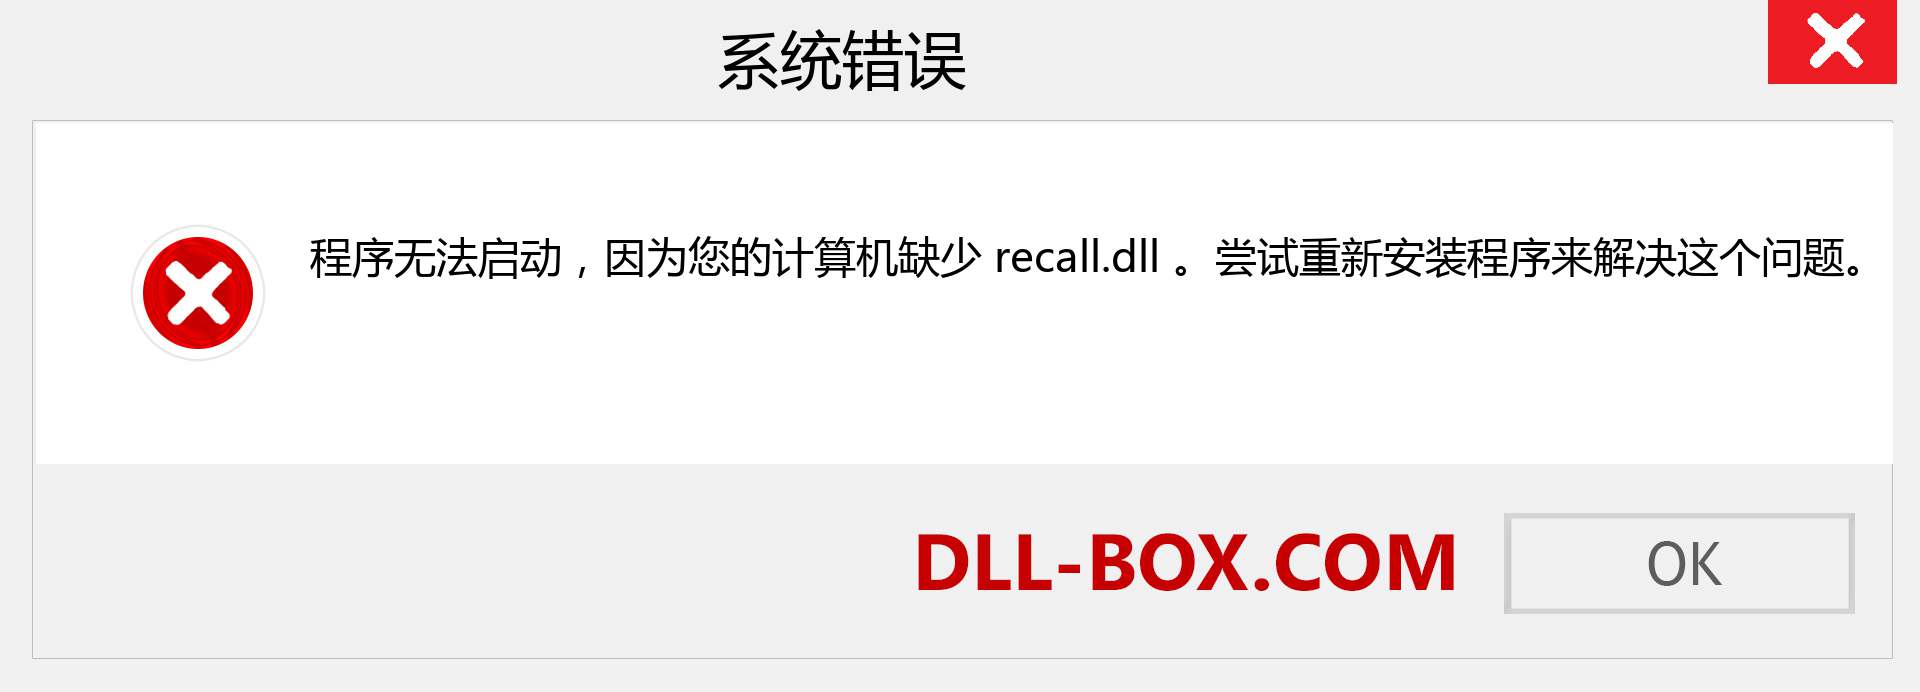 recall.dll 文件丢失？。 适用于 Windows 7、8、10 的下载 - 修复 Windows、照片、图像上的 recall dll 丢失错误